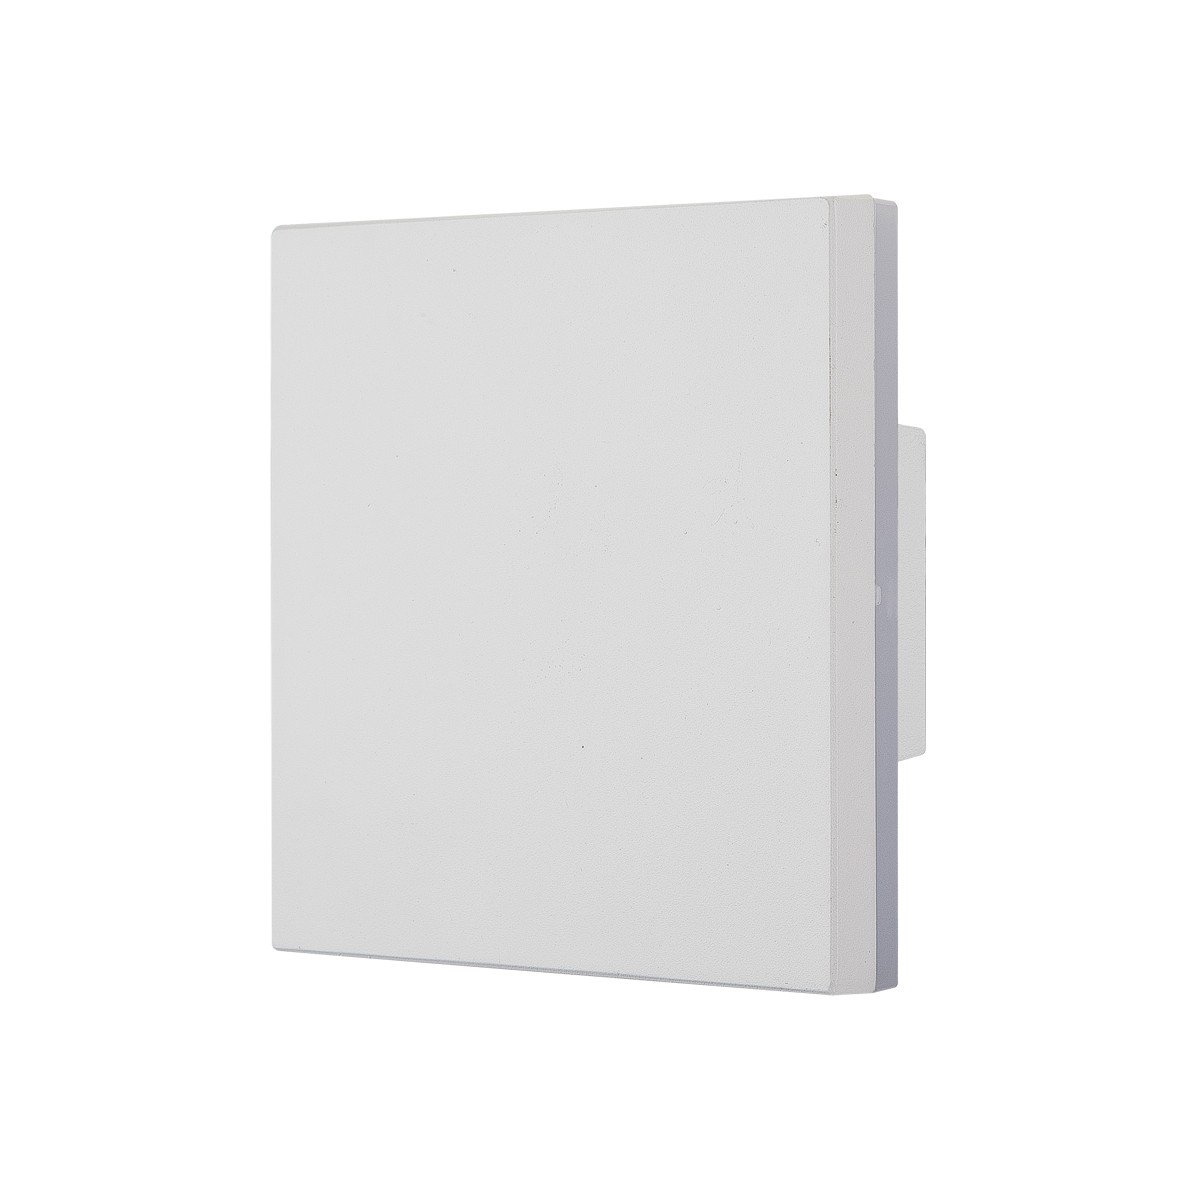 Led Φωτιστικό Αλουμινίου Τοίχου IP54 10w 3000K 630lm Λευκό Χρώμα      VK/02054/W/W